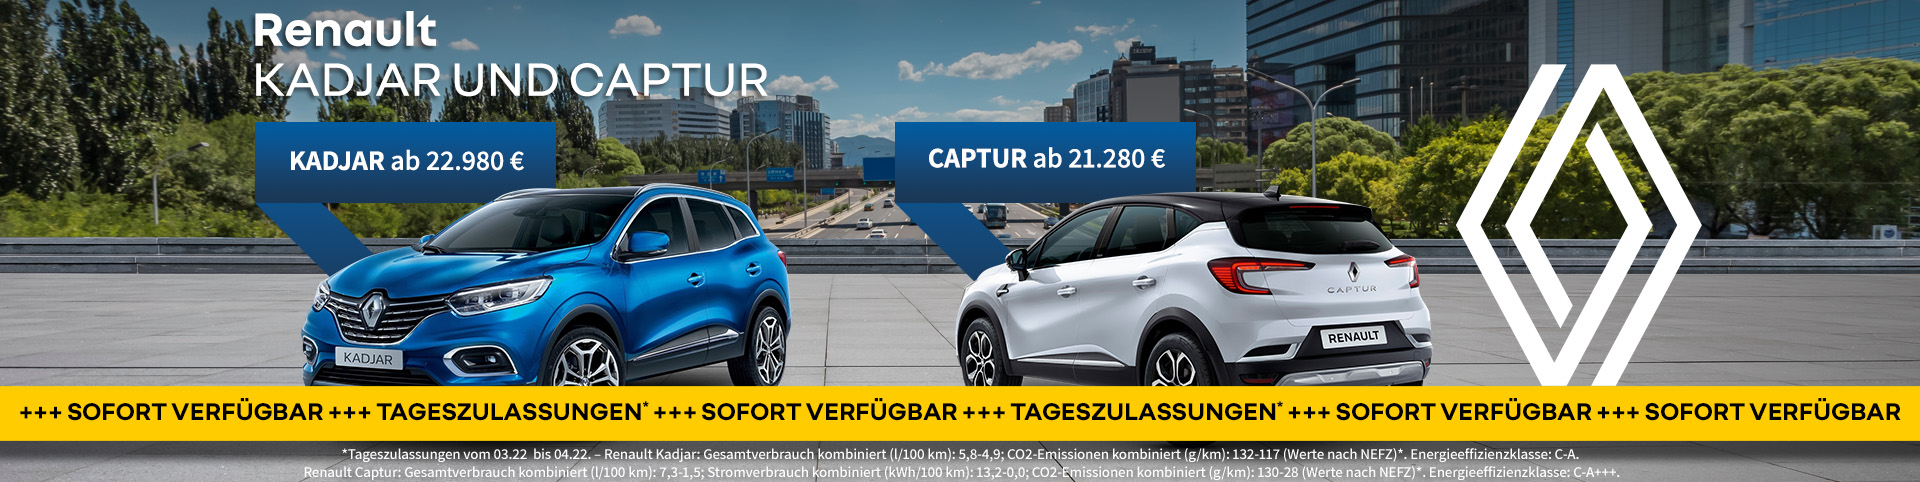 Renault Kadjar und Captur sofort verfügbar bei Preckel Automobile